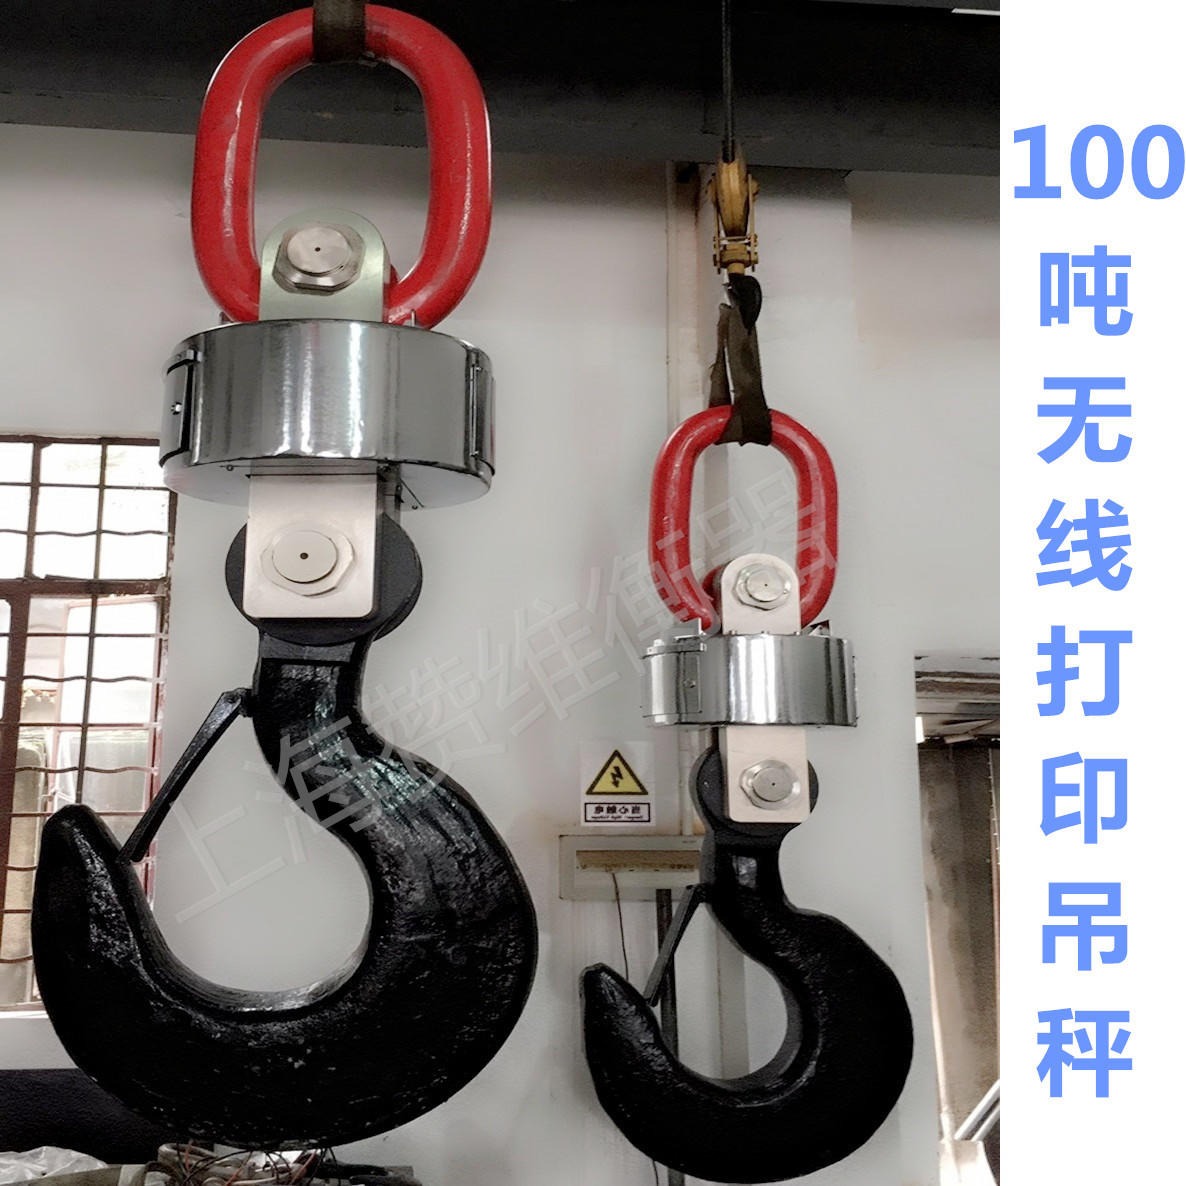 赞维厂家直销100吨无线电子吊秤 远距离传输 打印型吊钩称 10T20t30t50吨80T量程可选